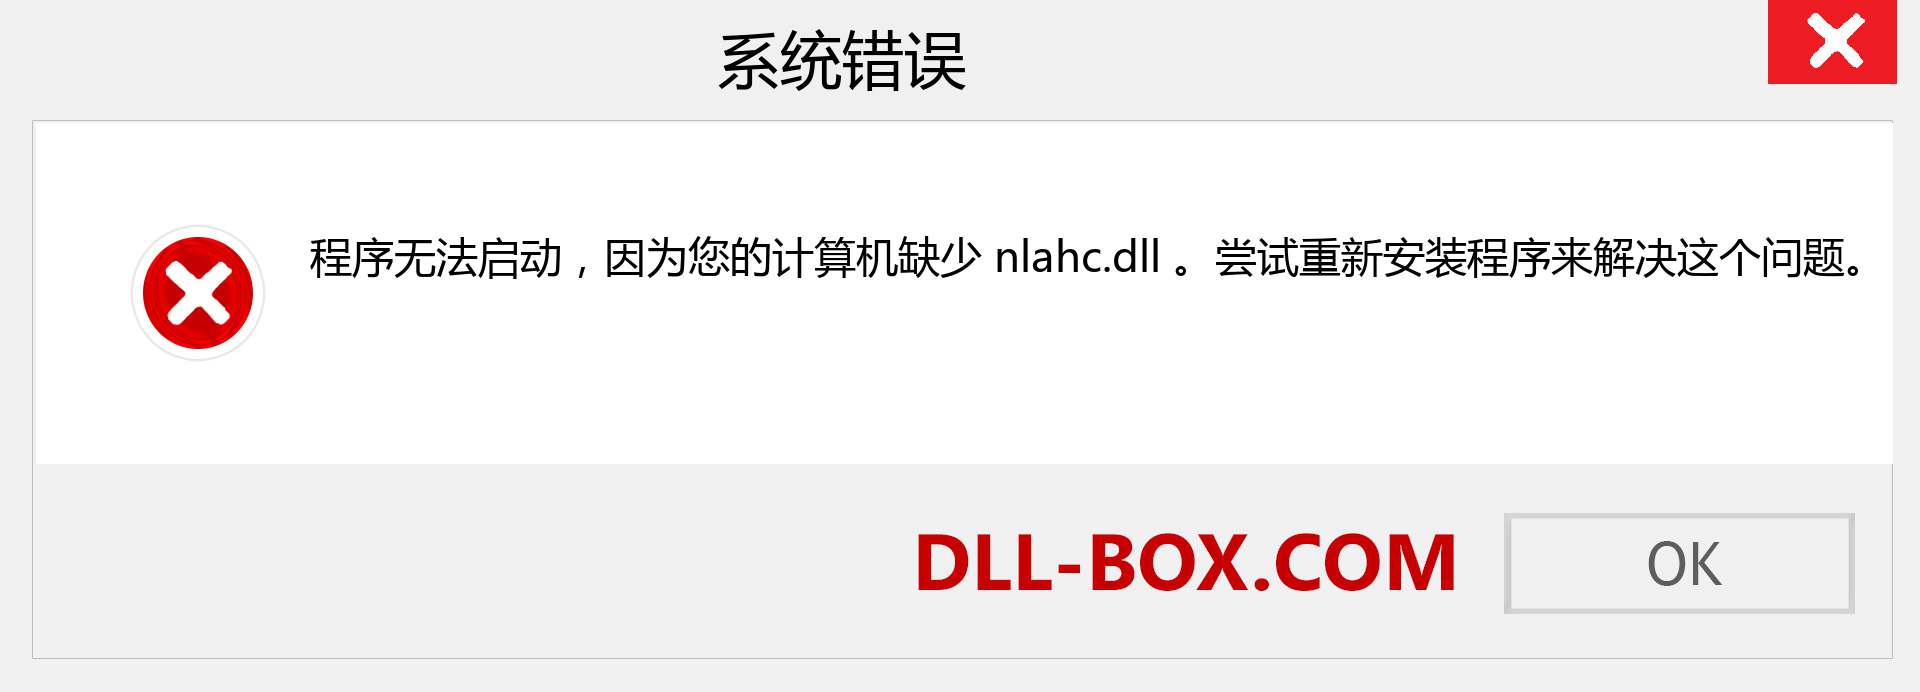 nlahc.dll 文件丢失？。 适用于 Windows 7、8、10 的下载 - 修复 Windows、照片、图像上的 nlahc dll 丢失错误